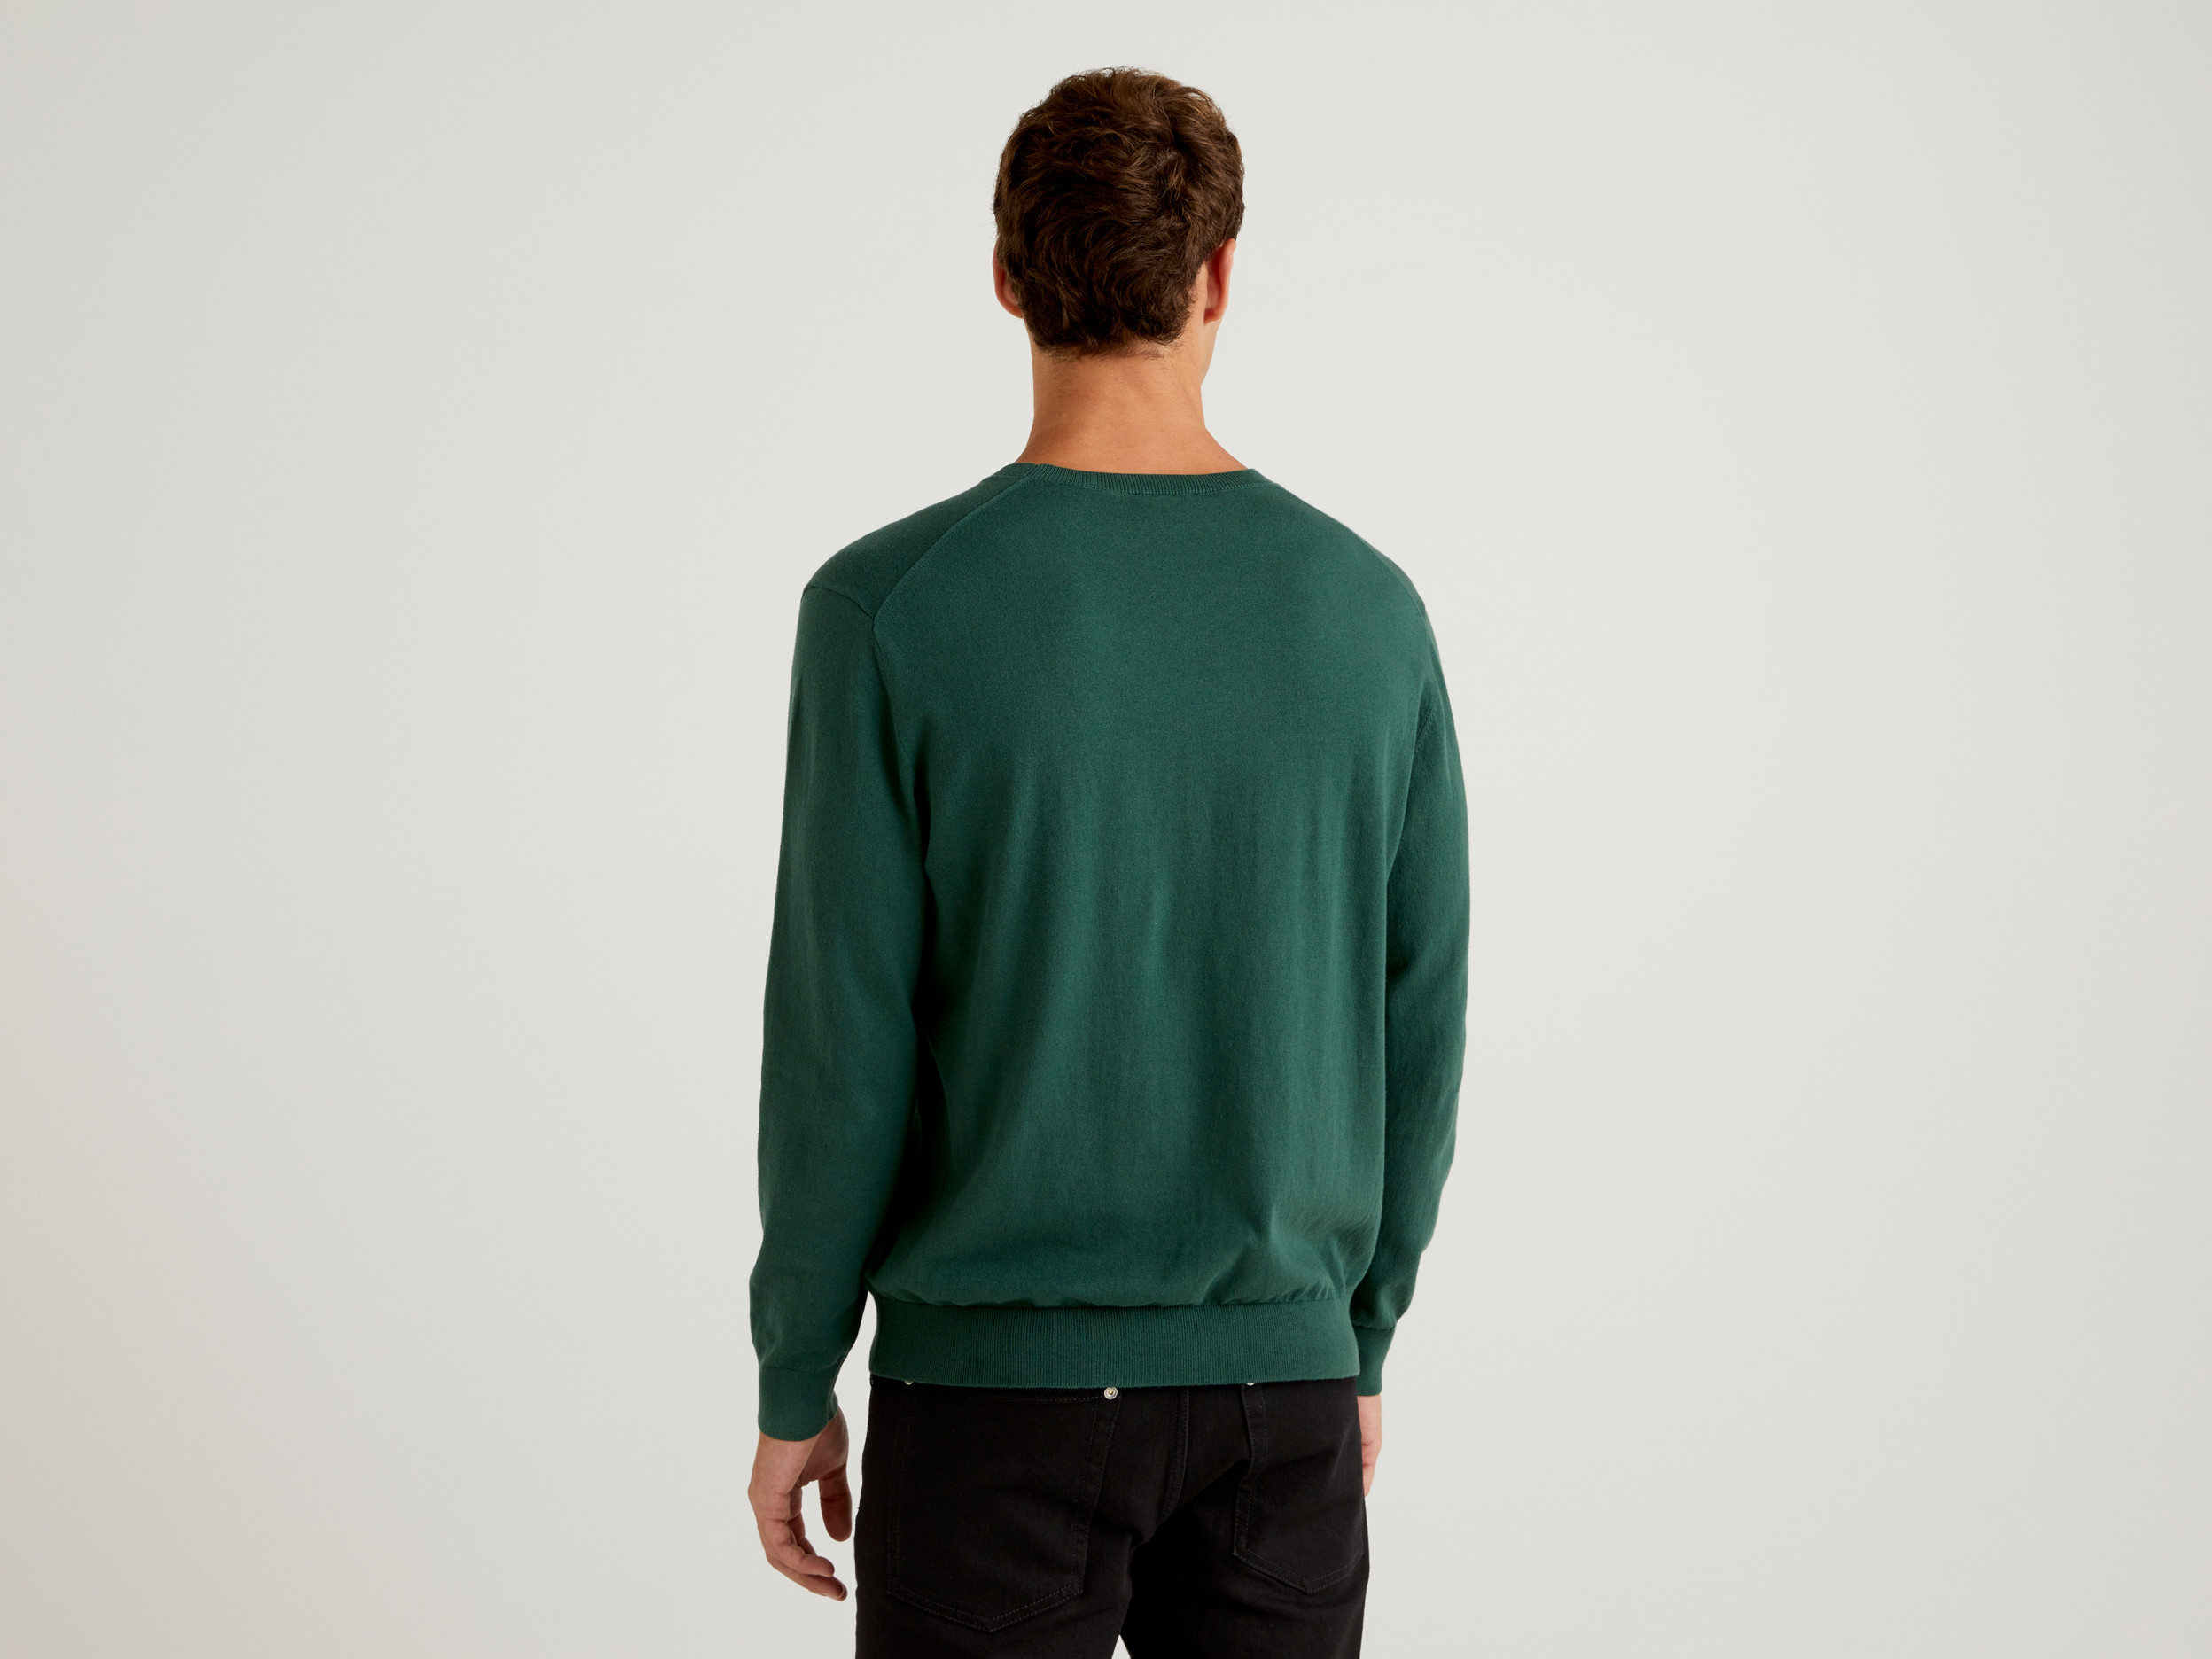 Benetton, Crew Neck Sweater In Lightweight Cotton Blend, Taglia Xxl, Dark Green, Men